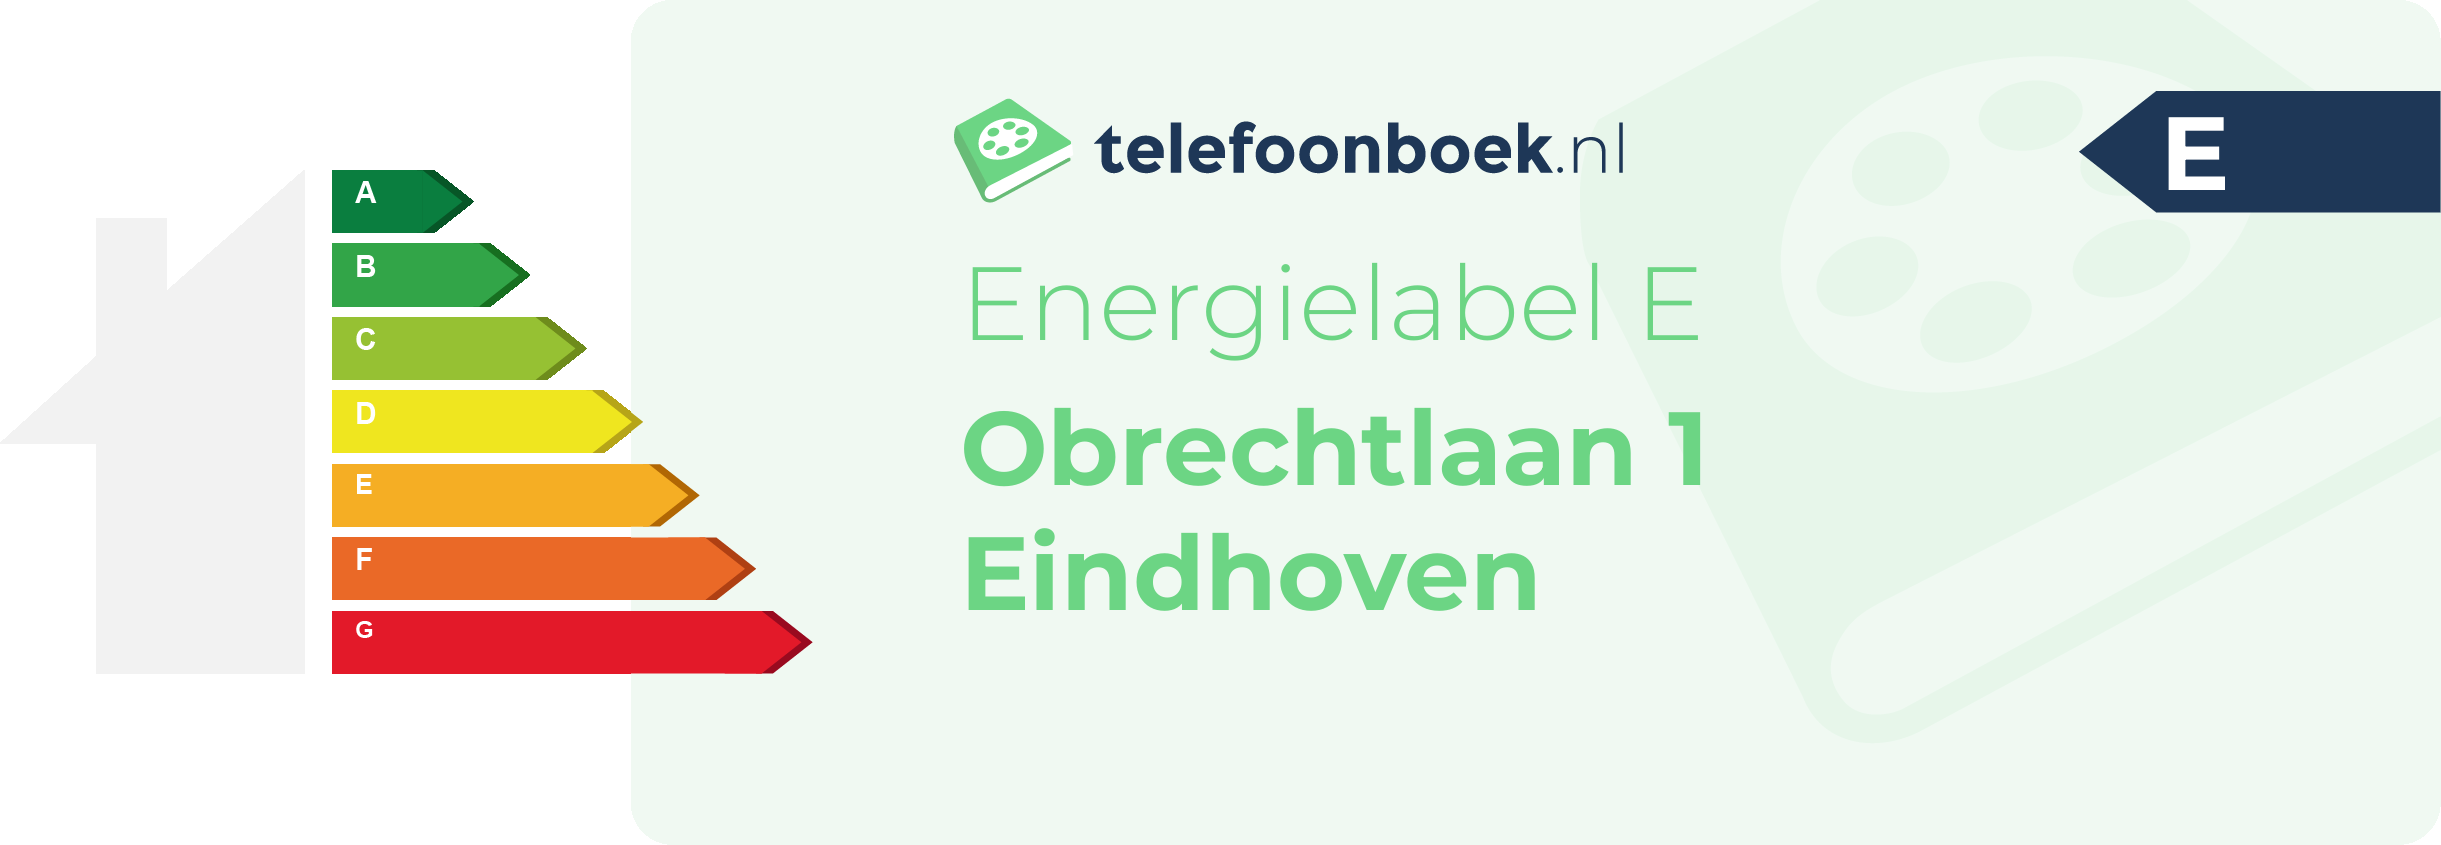 Energielabel Obrechtlaan 1 Eindhoven